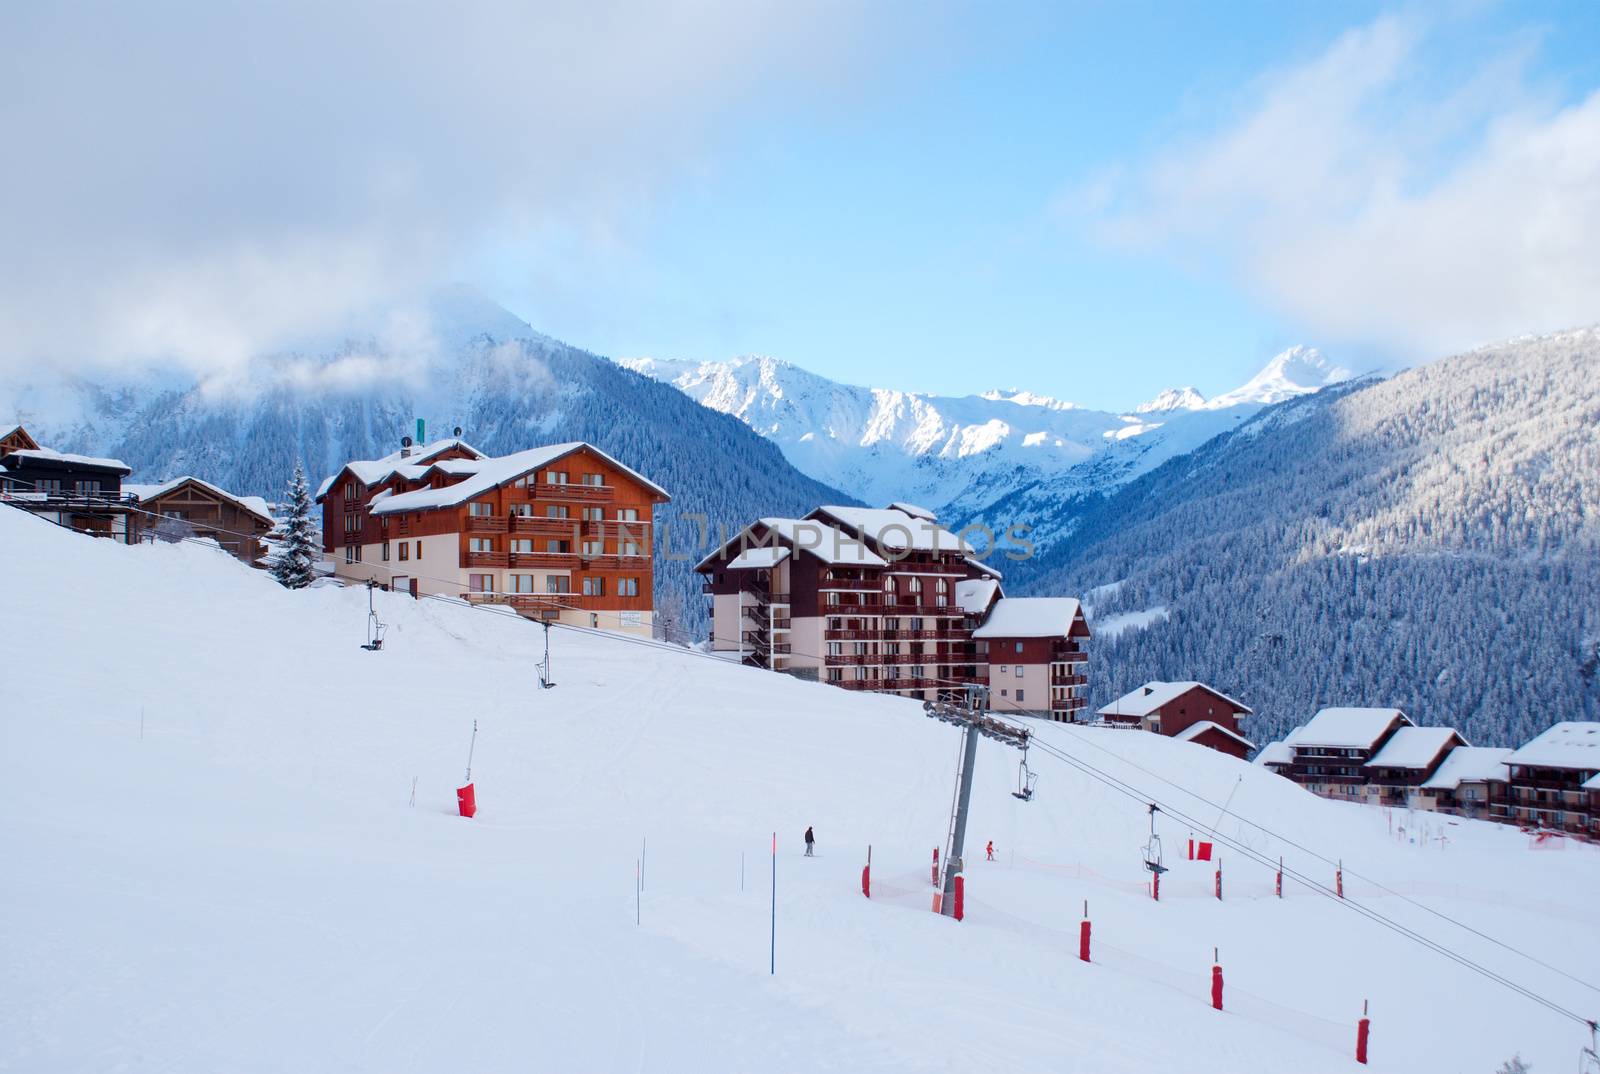 Ski resort by javax